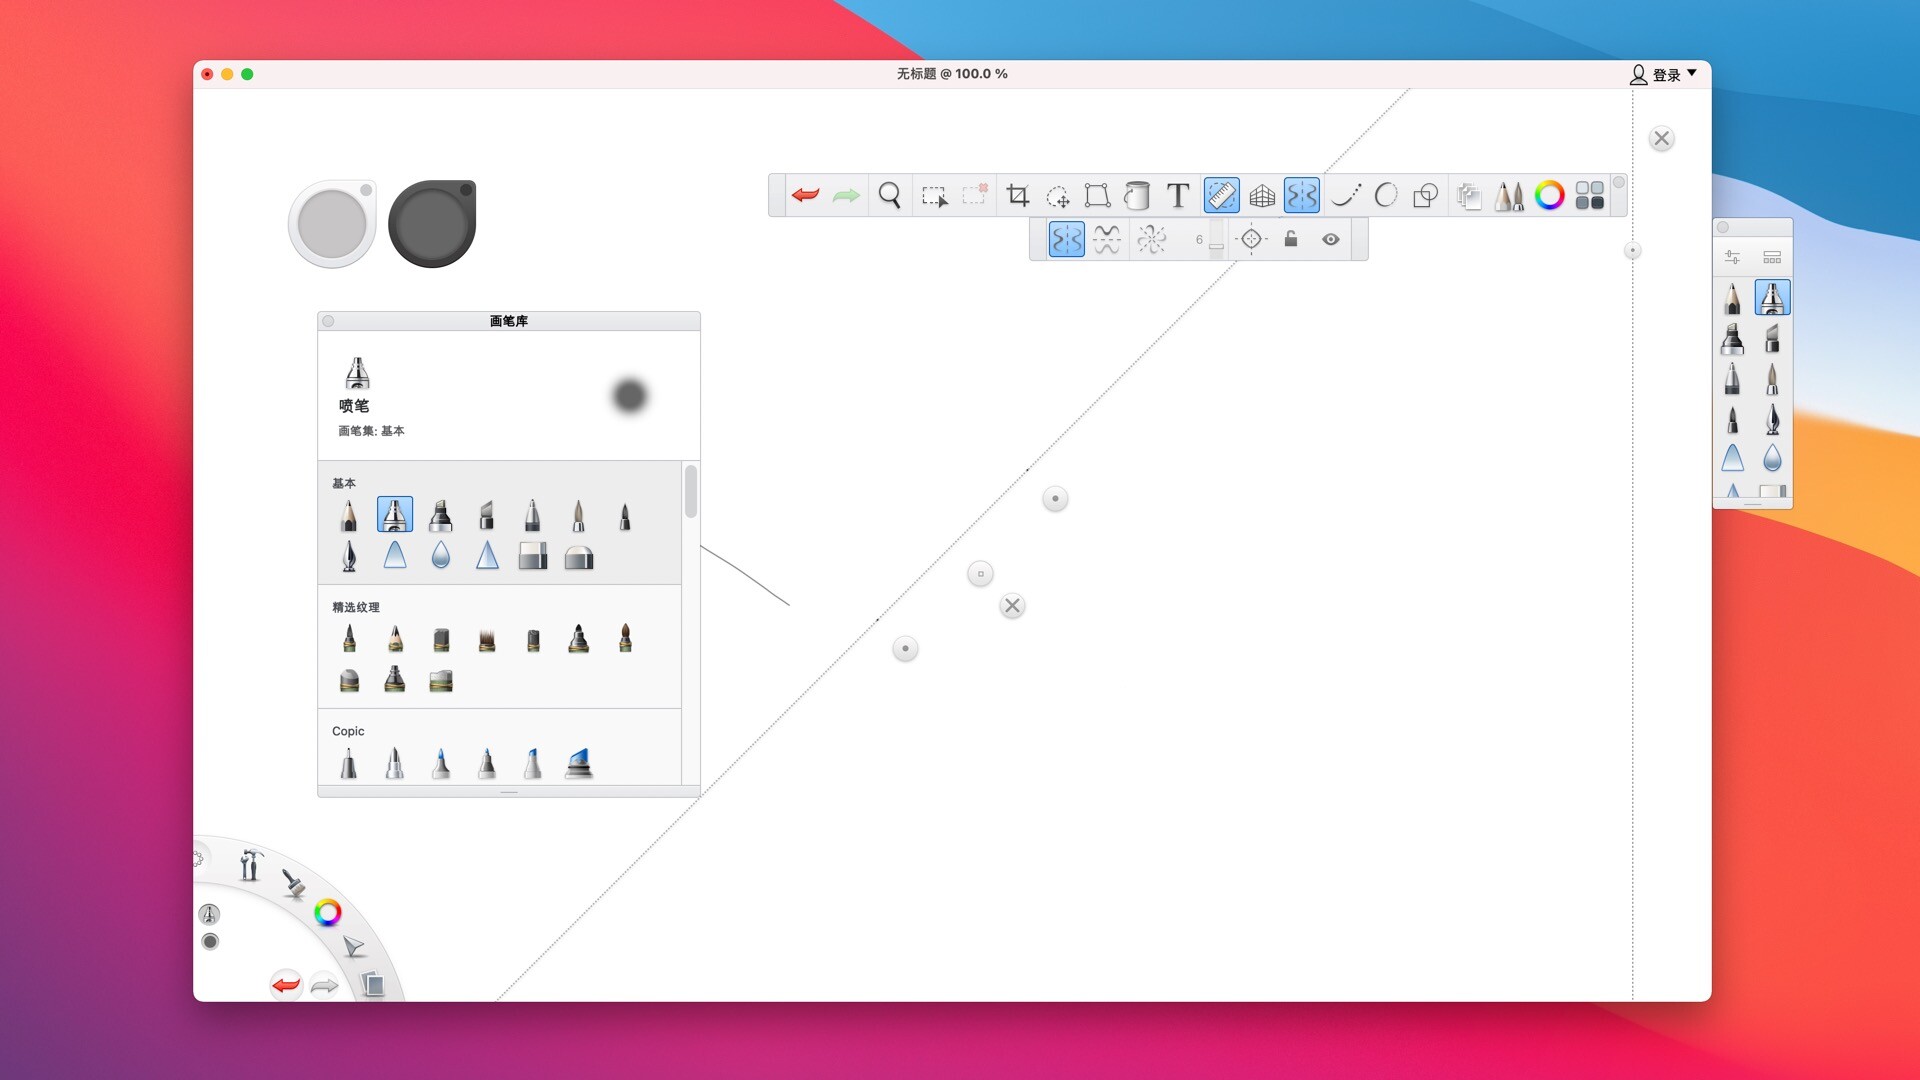 autodesk sketchbook pro mac